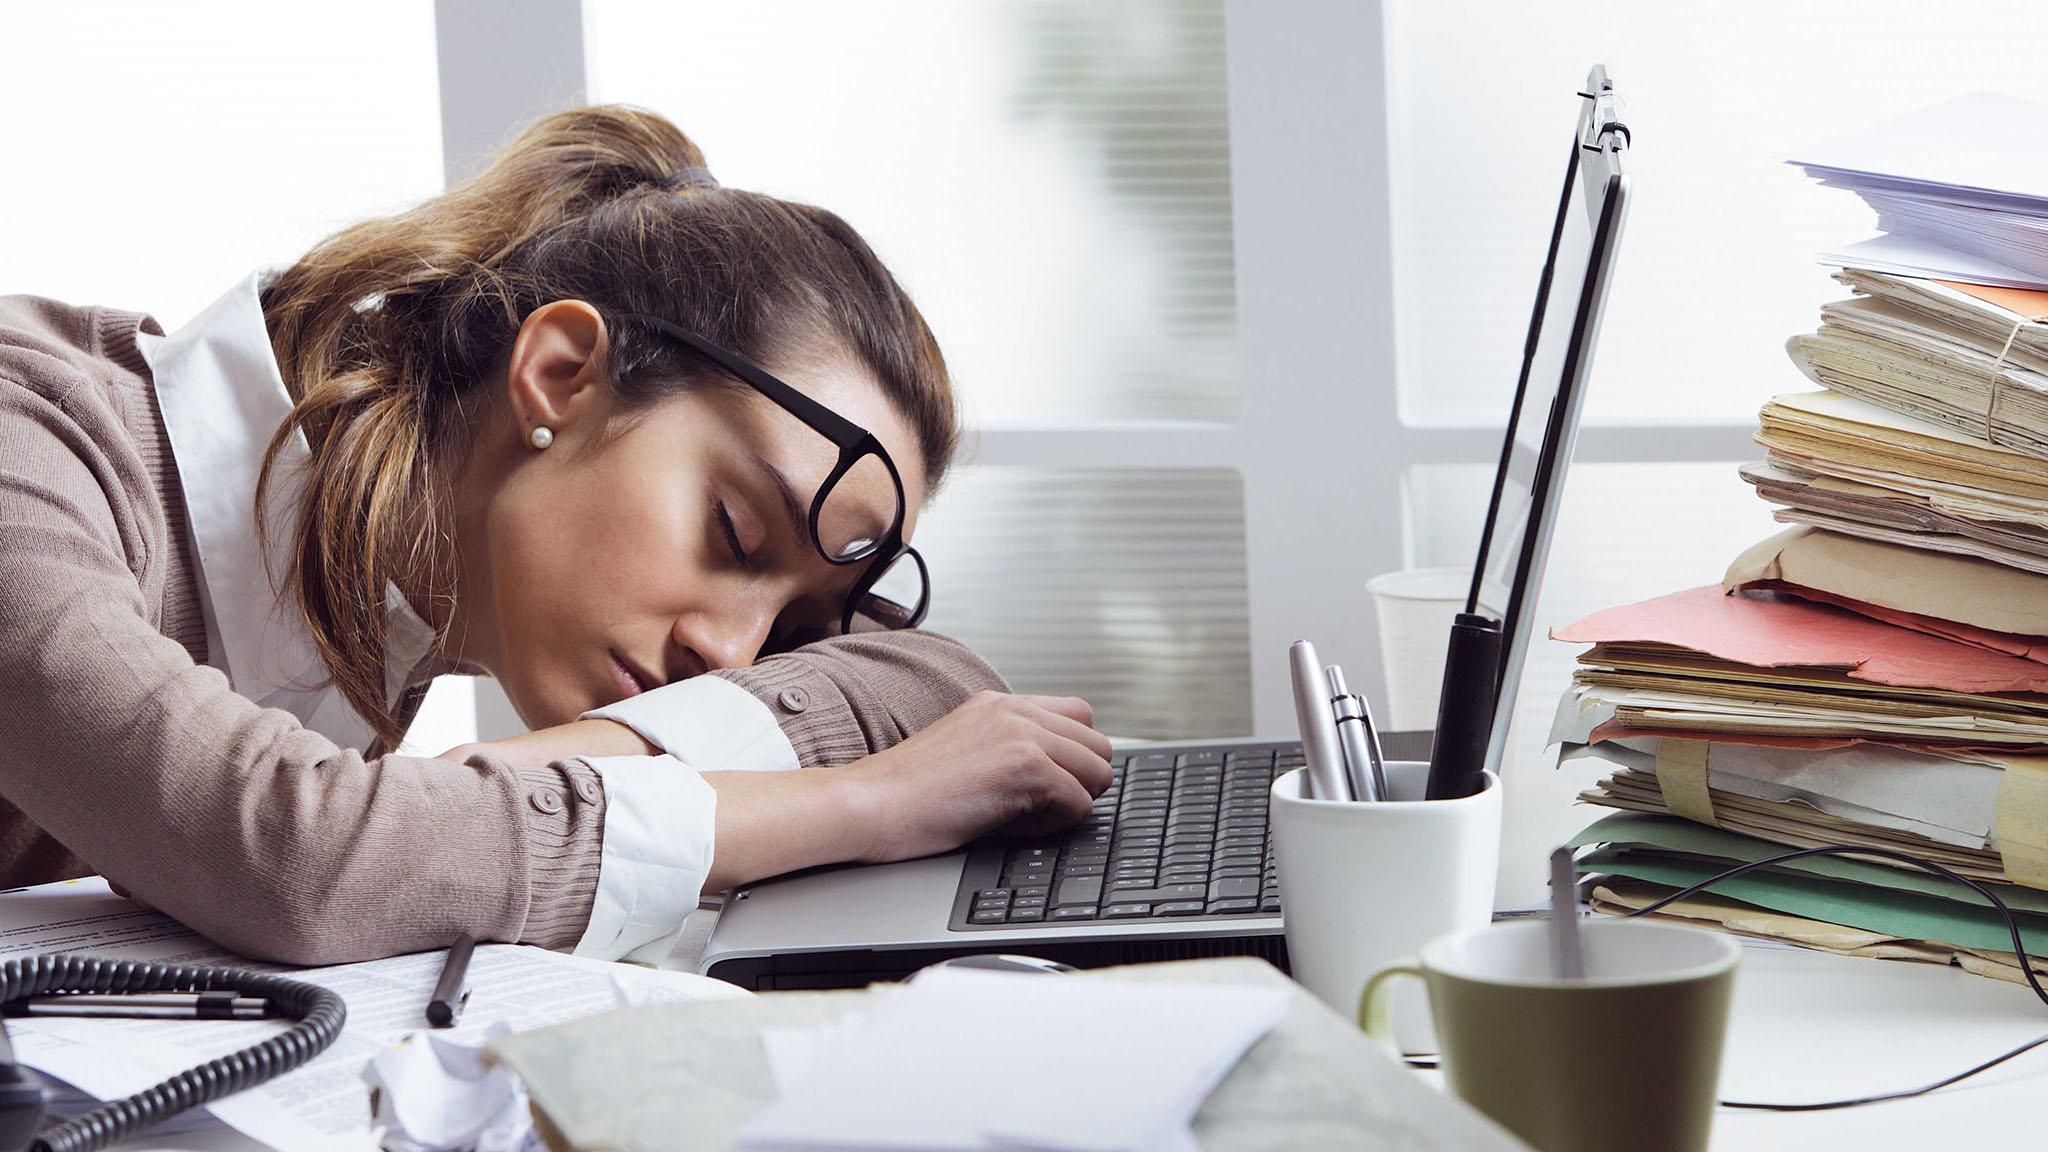 Недостаток сна и опьянение равноценны для мозга